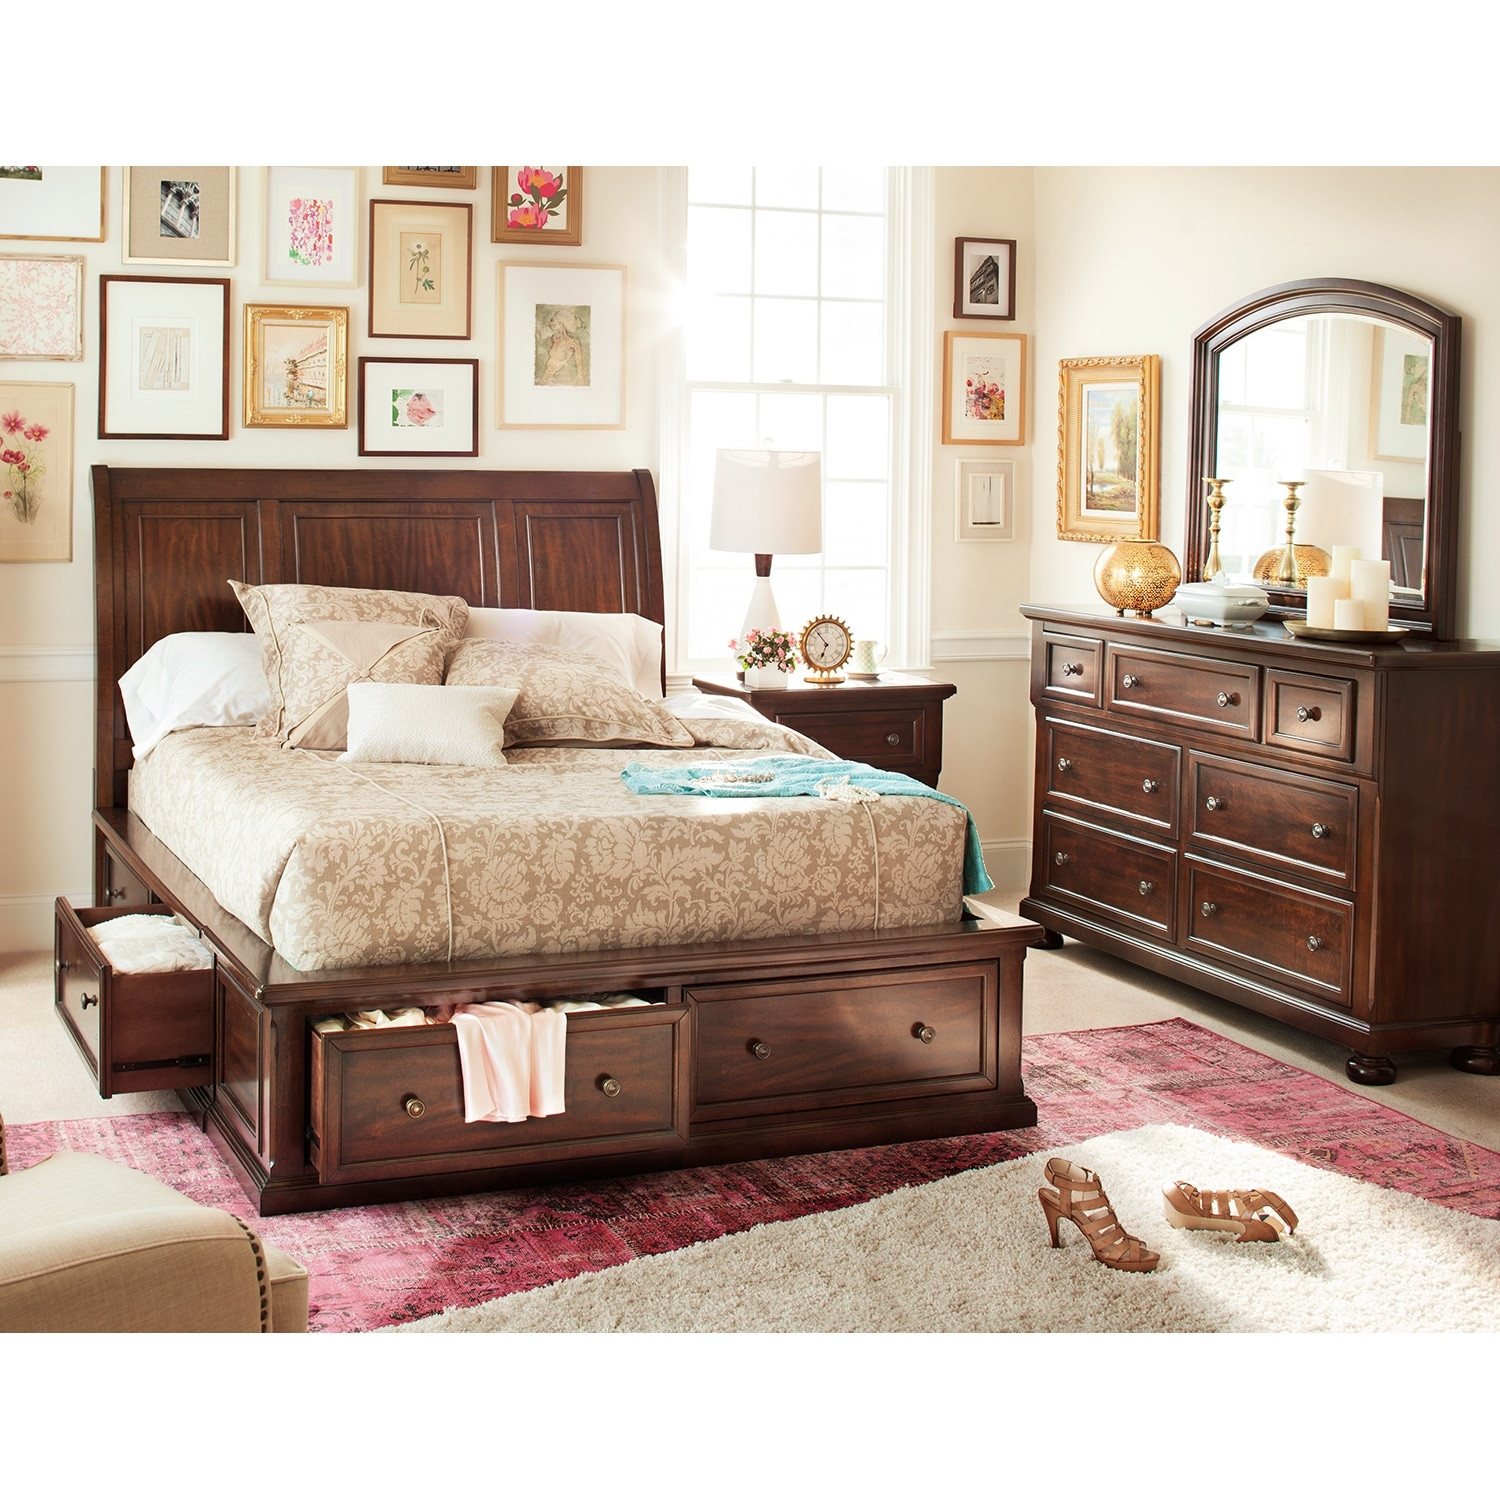 Queen Bedroom Sets With Storage
 Hanover Queen Storage Bed Cherry